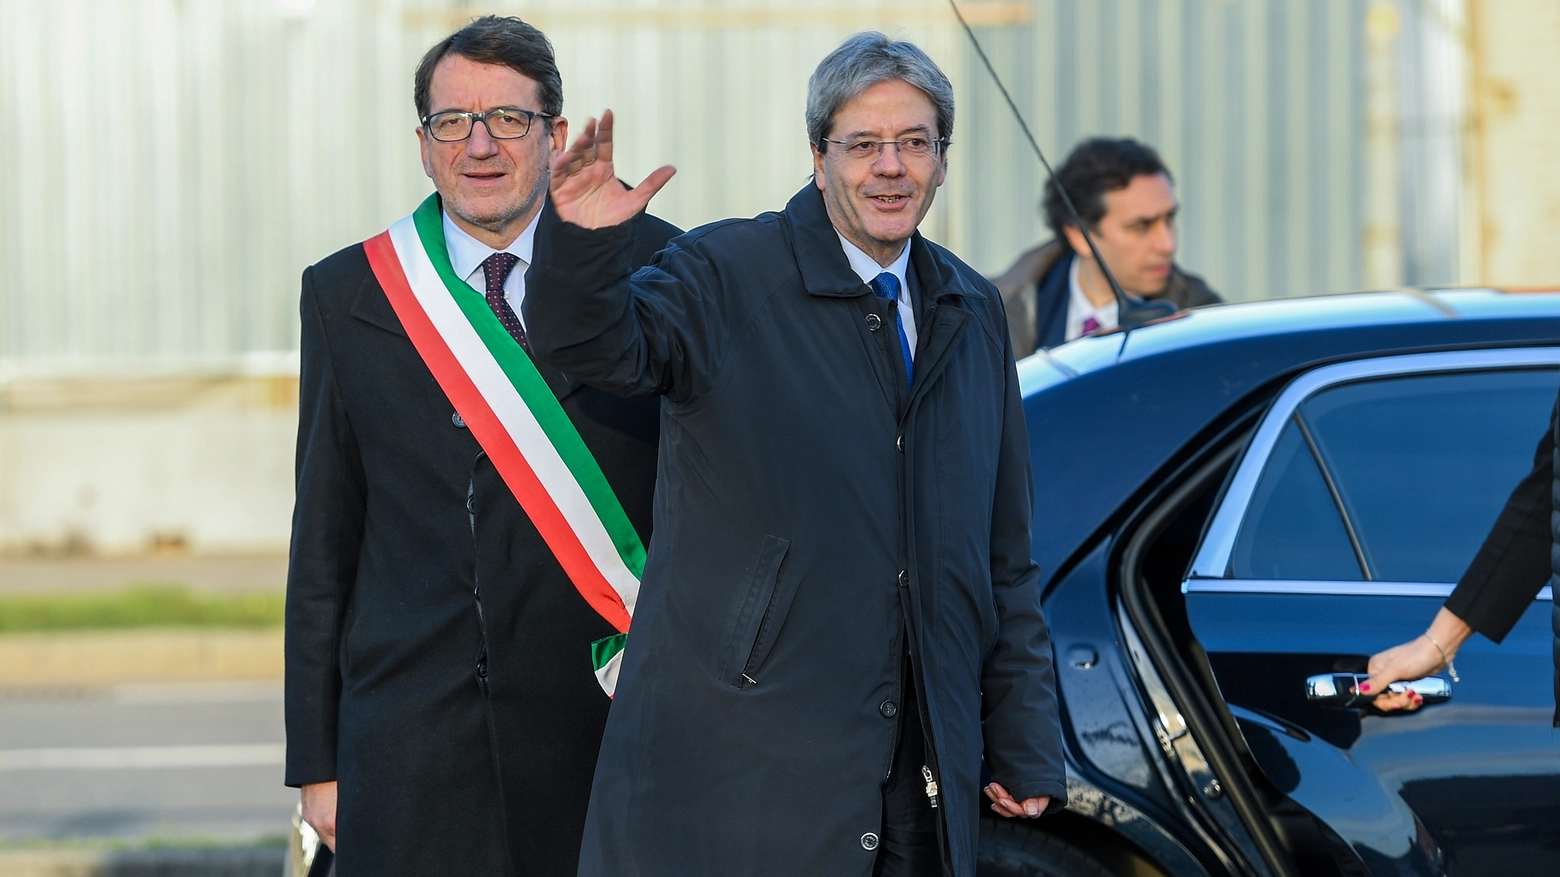 Il presidente Gentiloni in visita a Modena (foto Fiocchi)